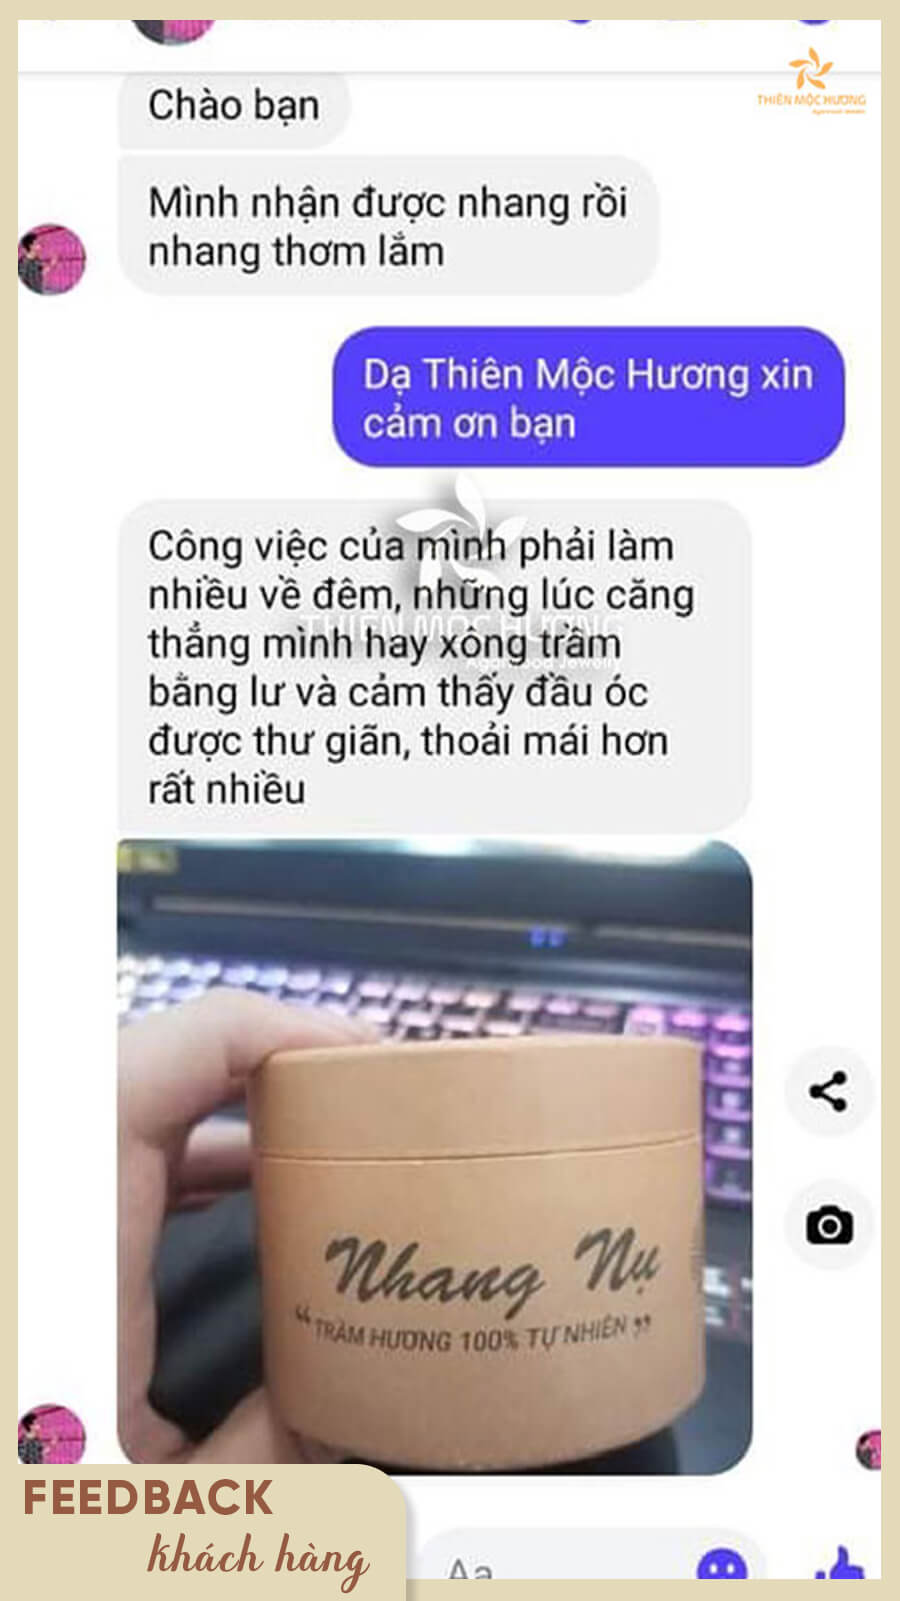 Livestream tư vấn - Thiên Mộc Hương